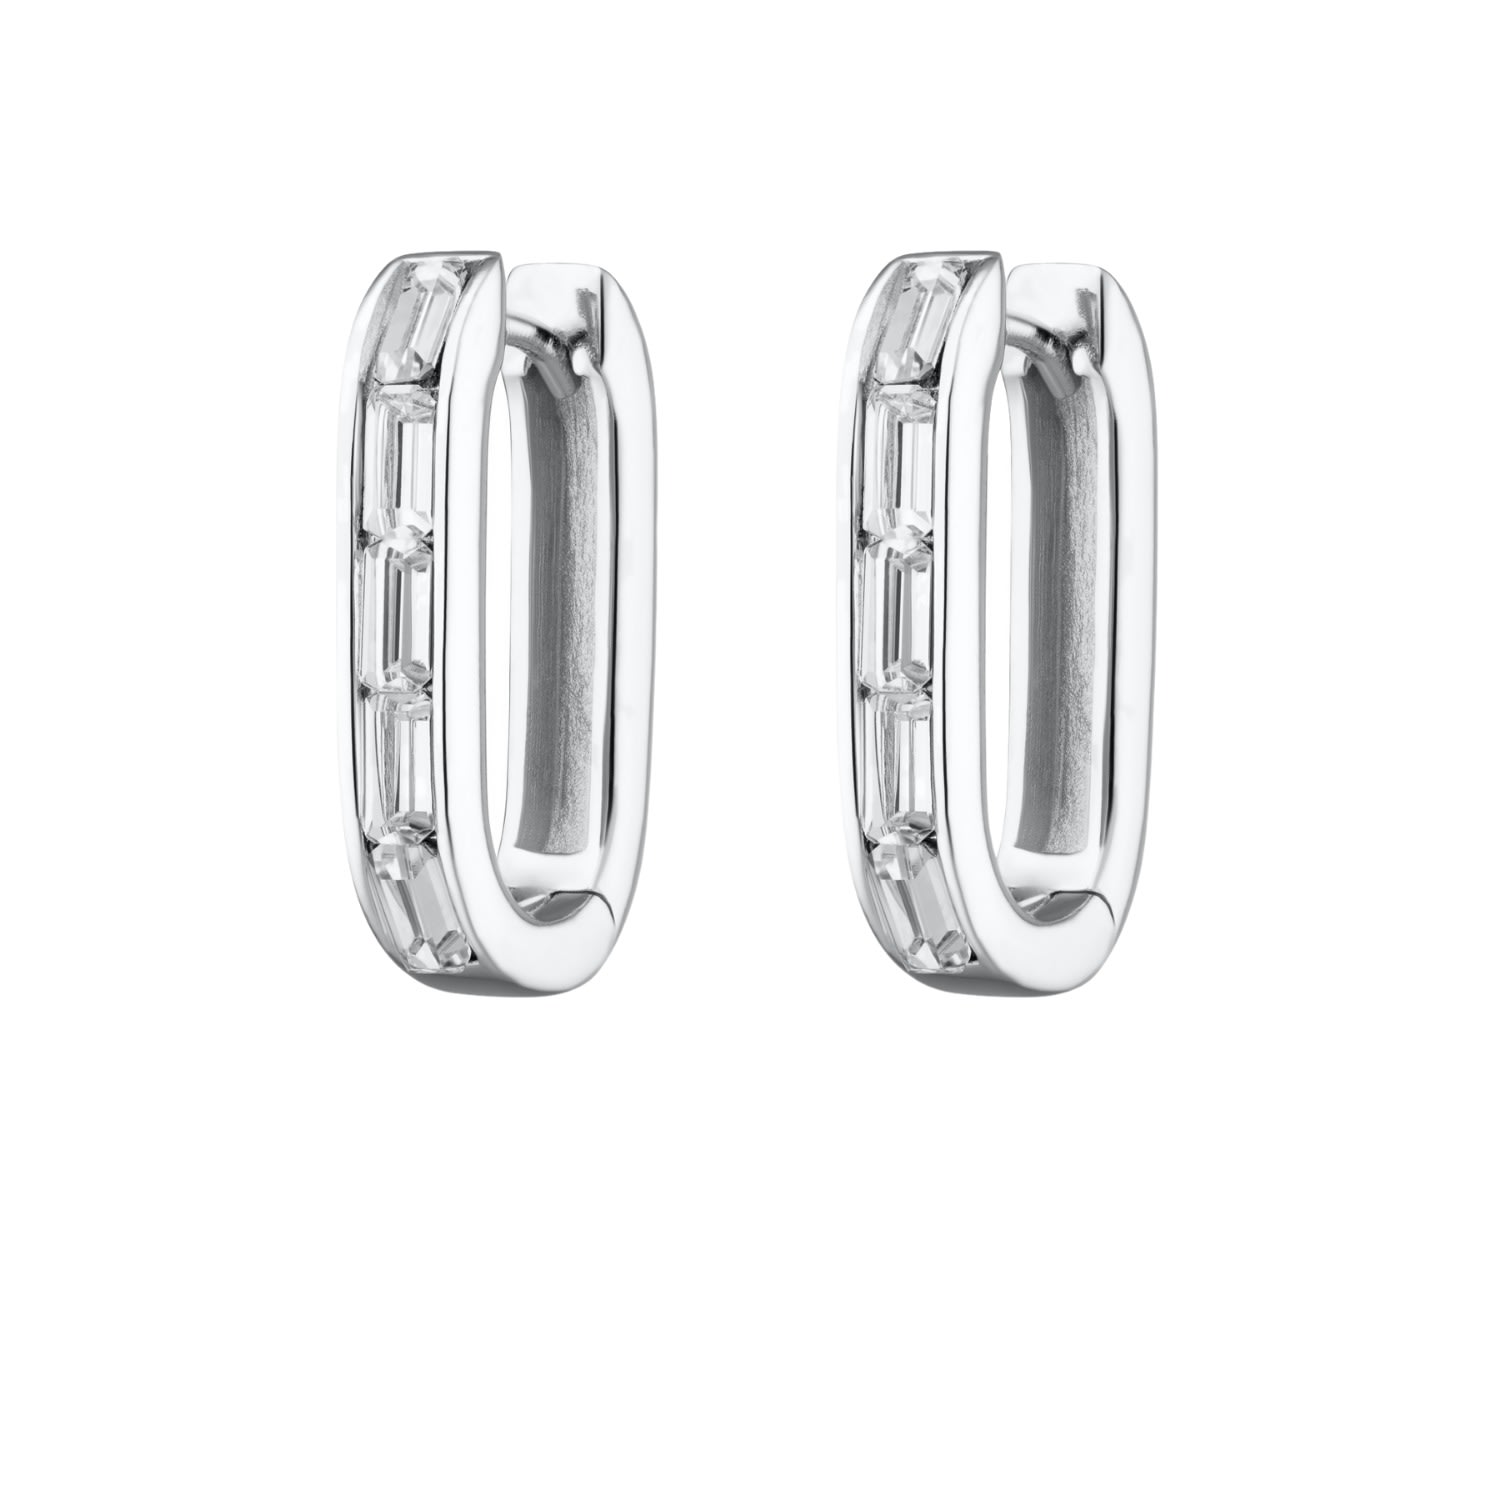 Women’s Silver Oval Baguette Hoop Earrings With Clear Stones Scream Pretty